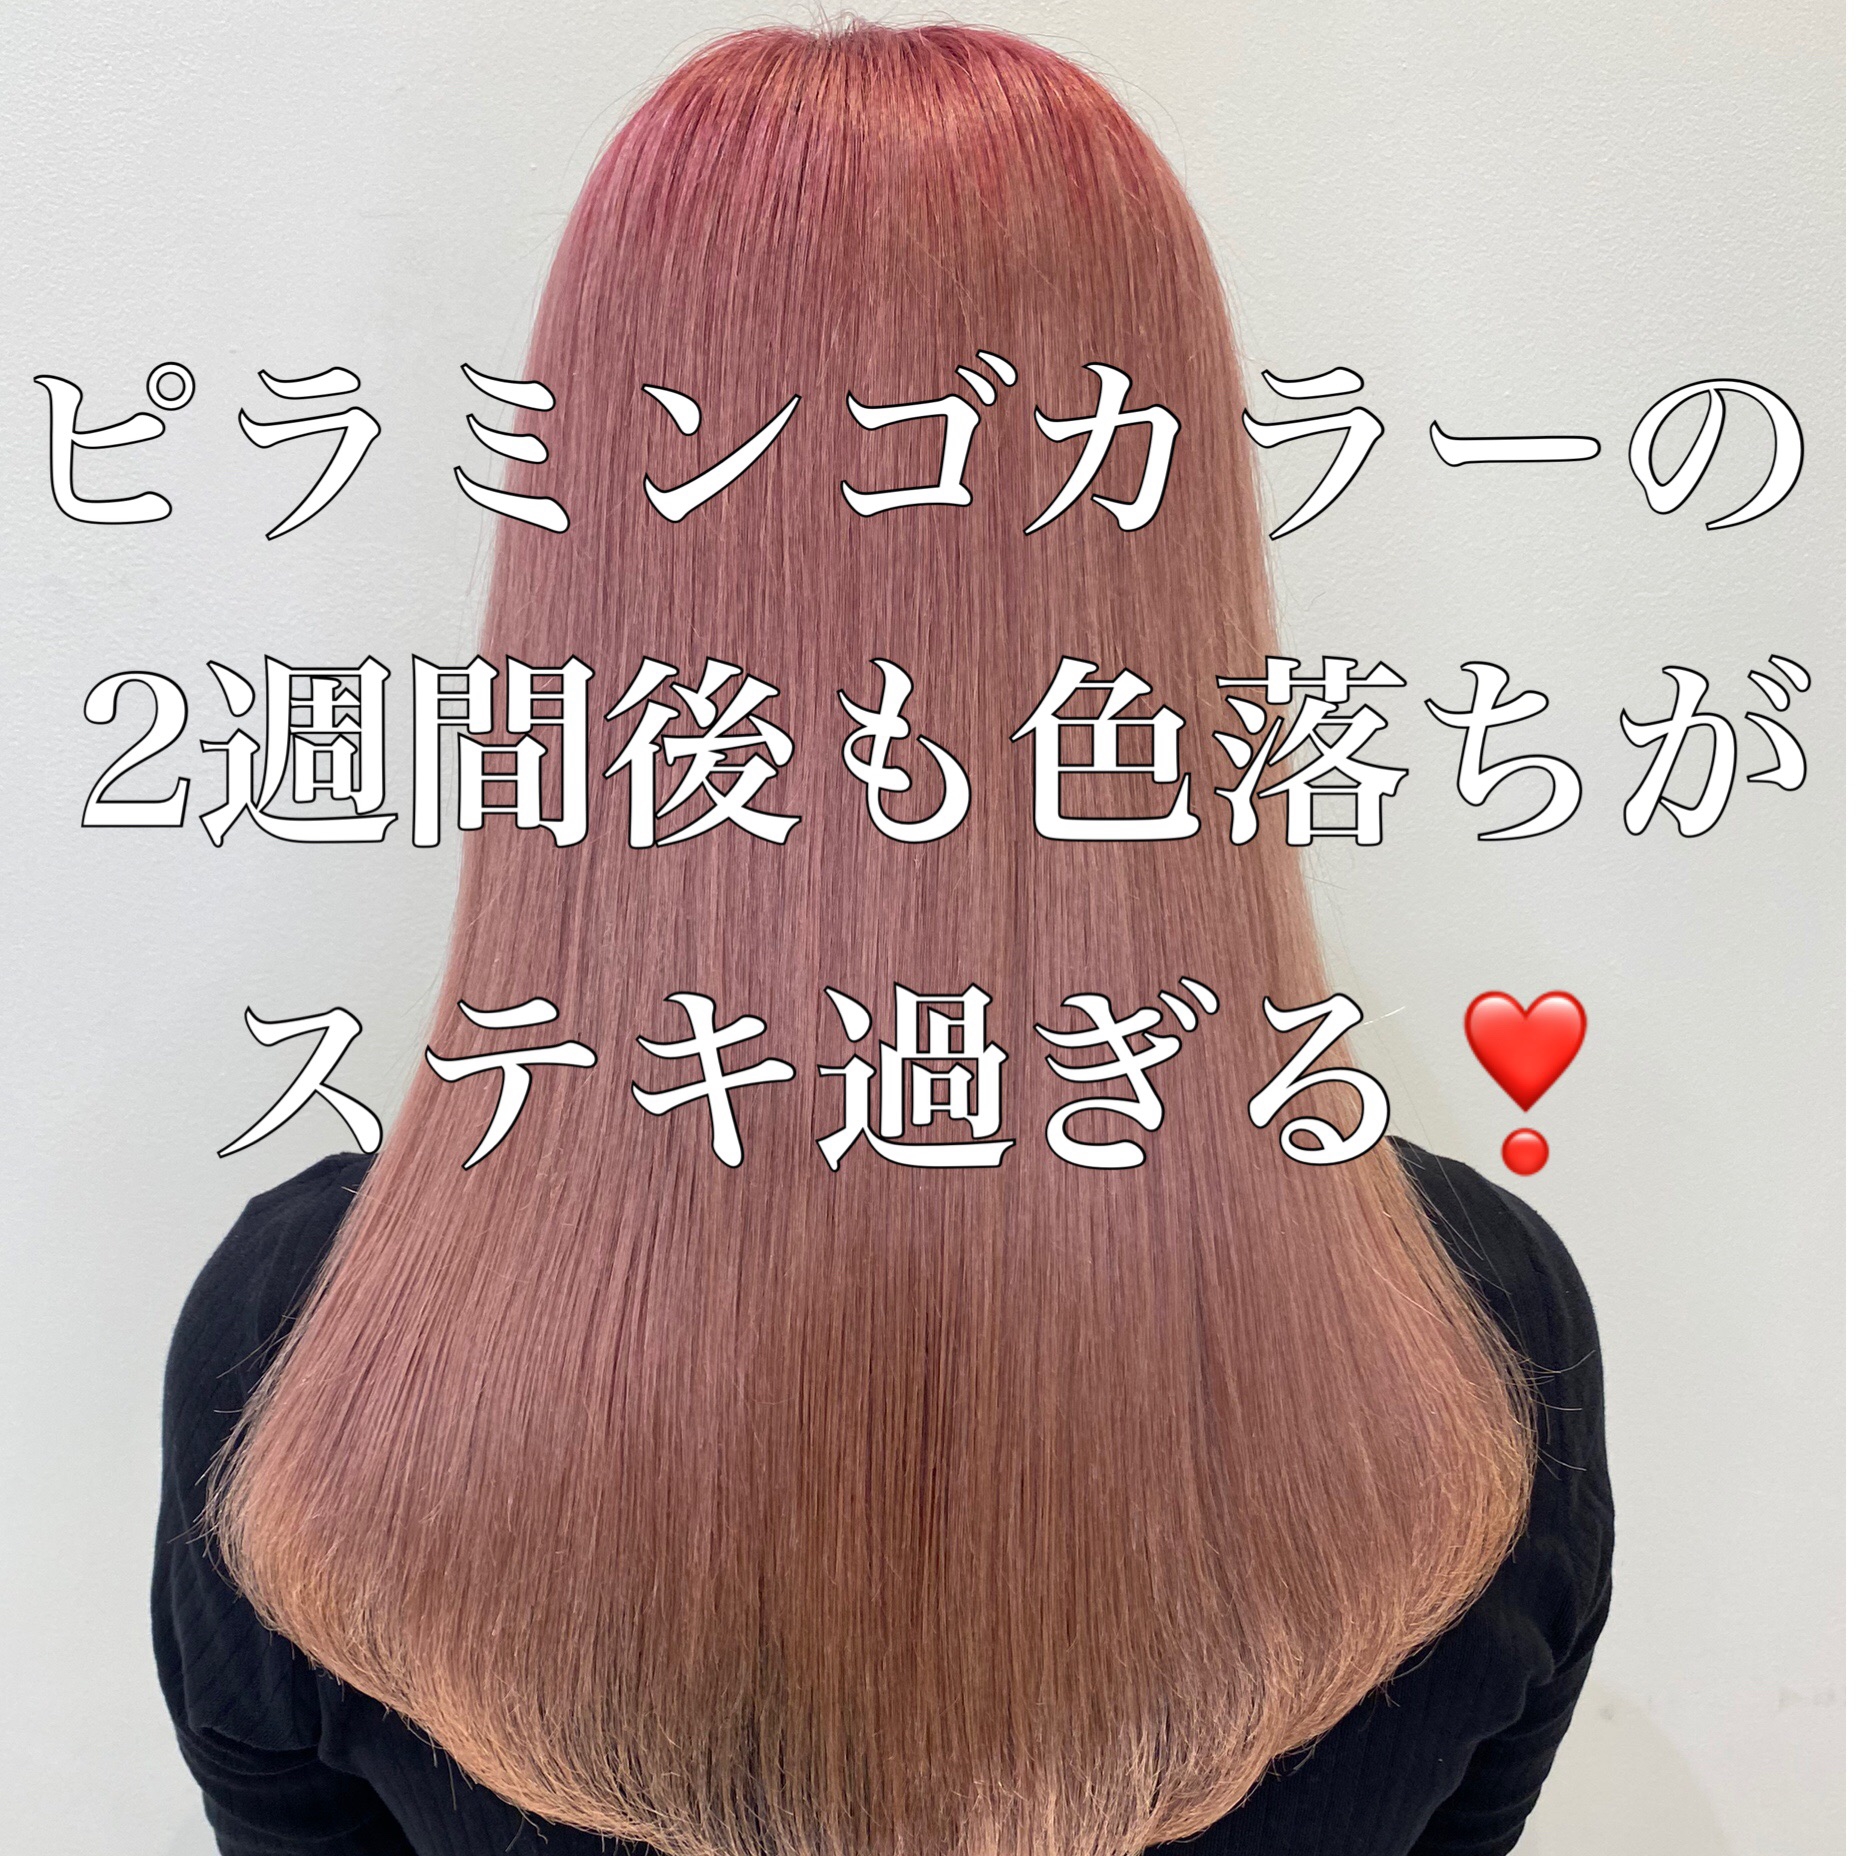 検証 ピラミンゴカラーの2週間後も色落ちがステキ過ぎる Naoki Hair Dressing 渋谷店 ブログ